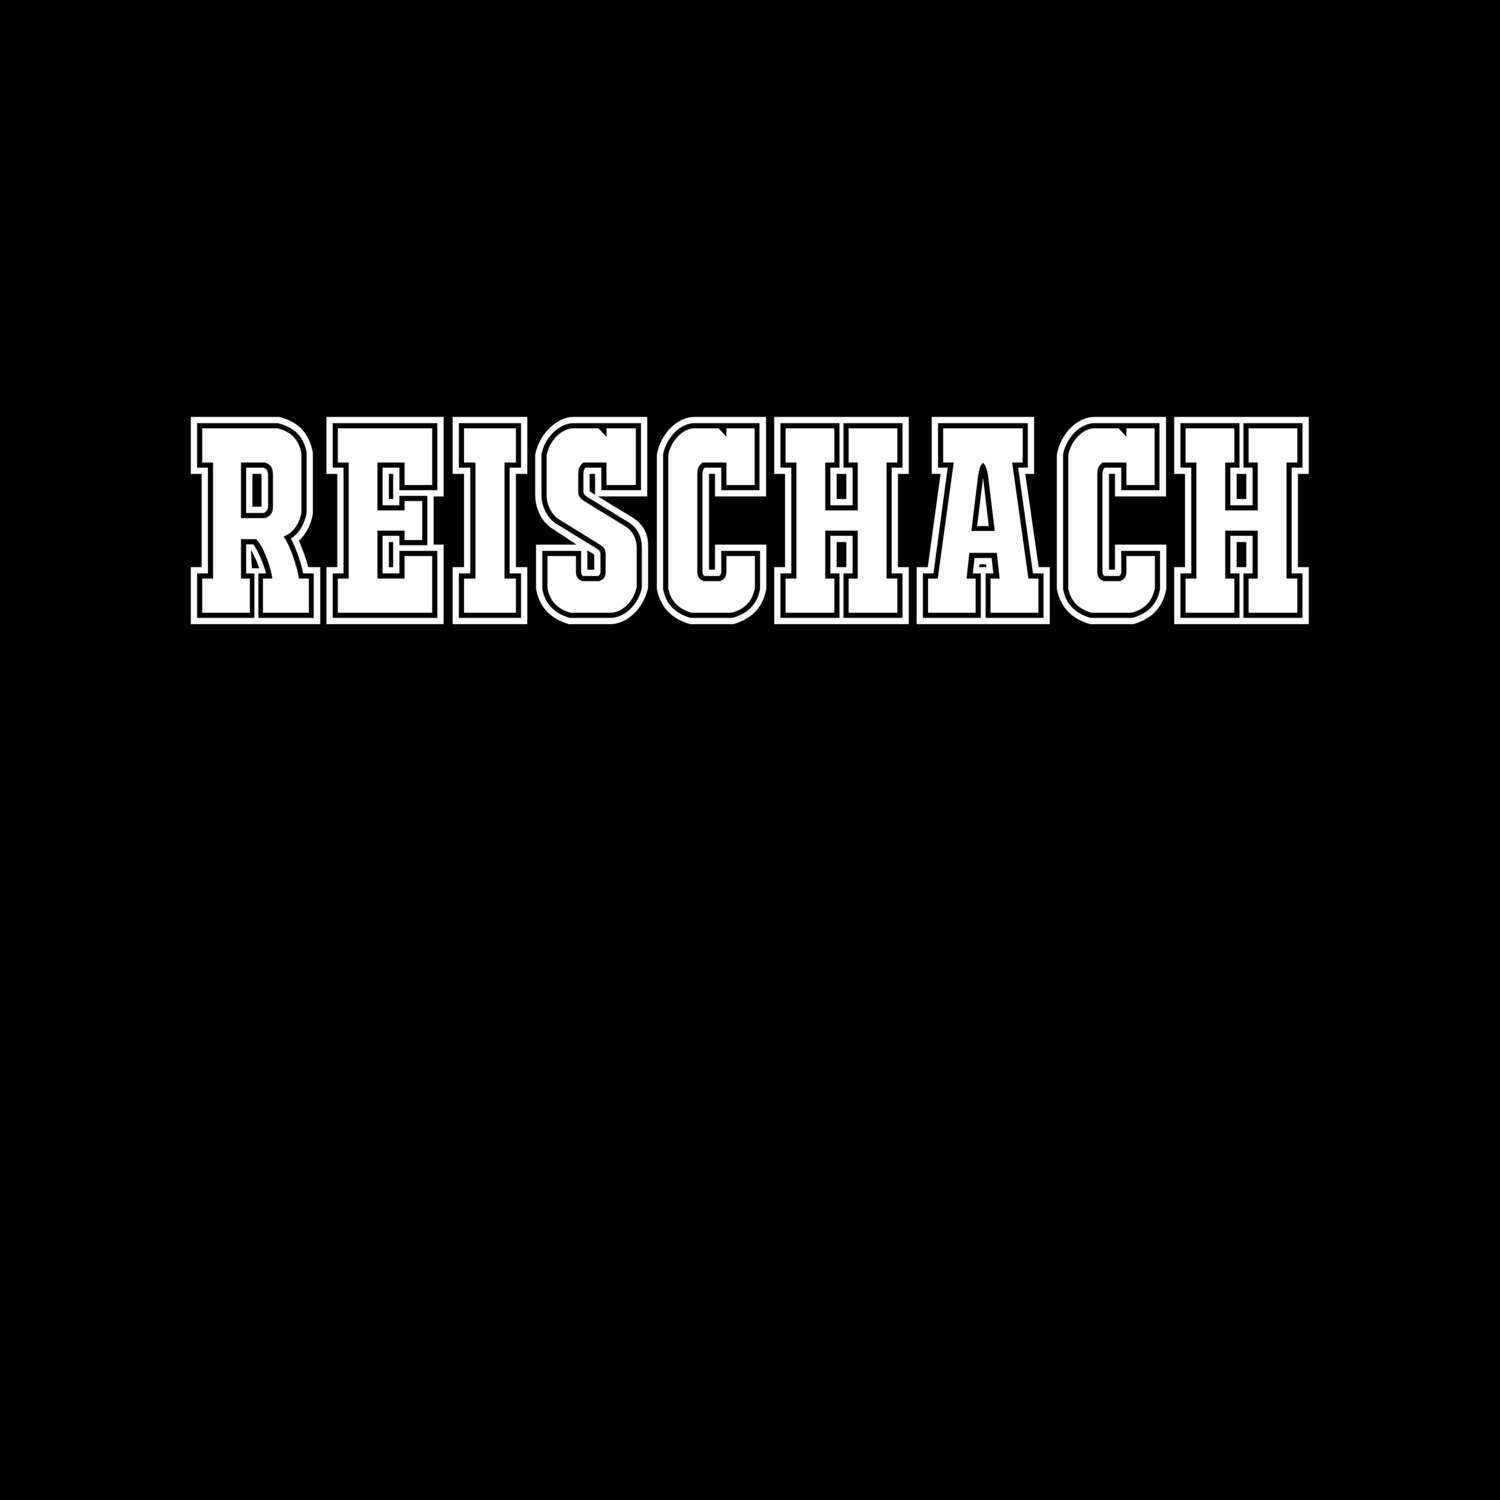 Reischach T-Shirt »Classic«